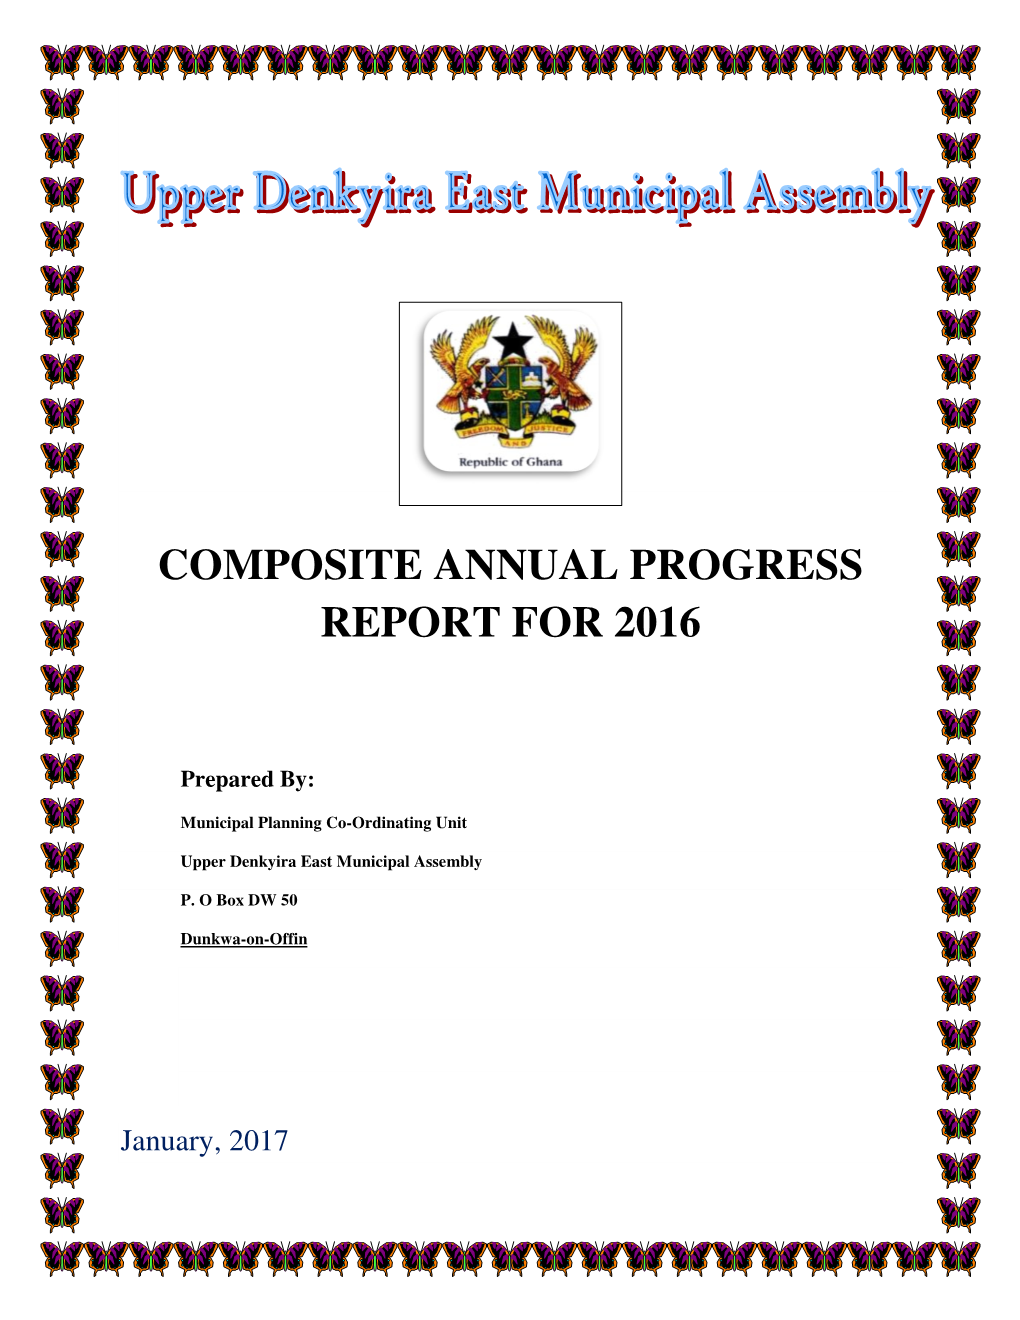 Composite Annual Progress Report for 2016